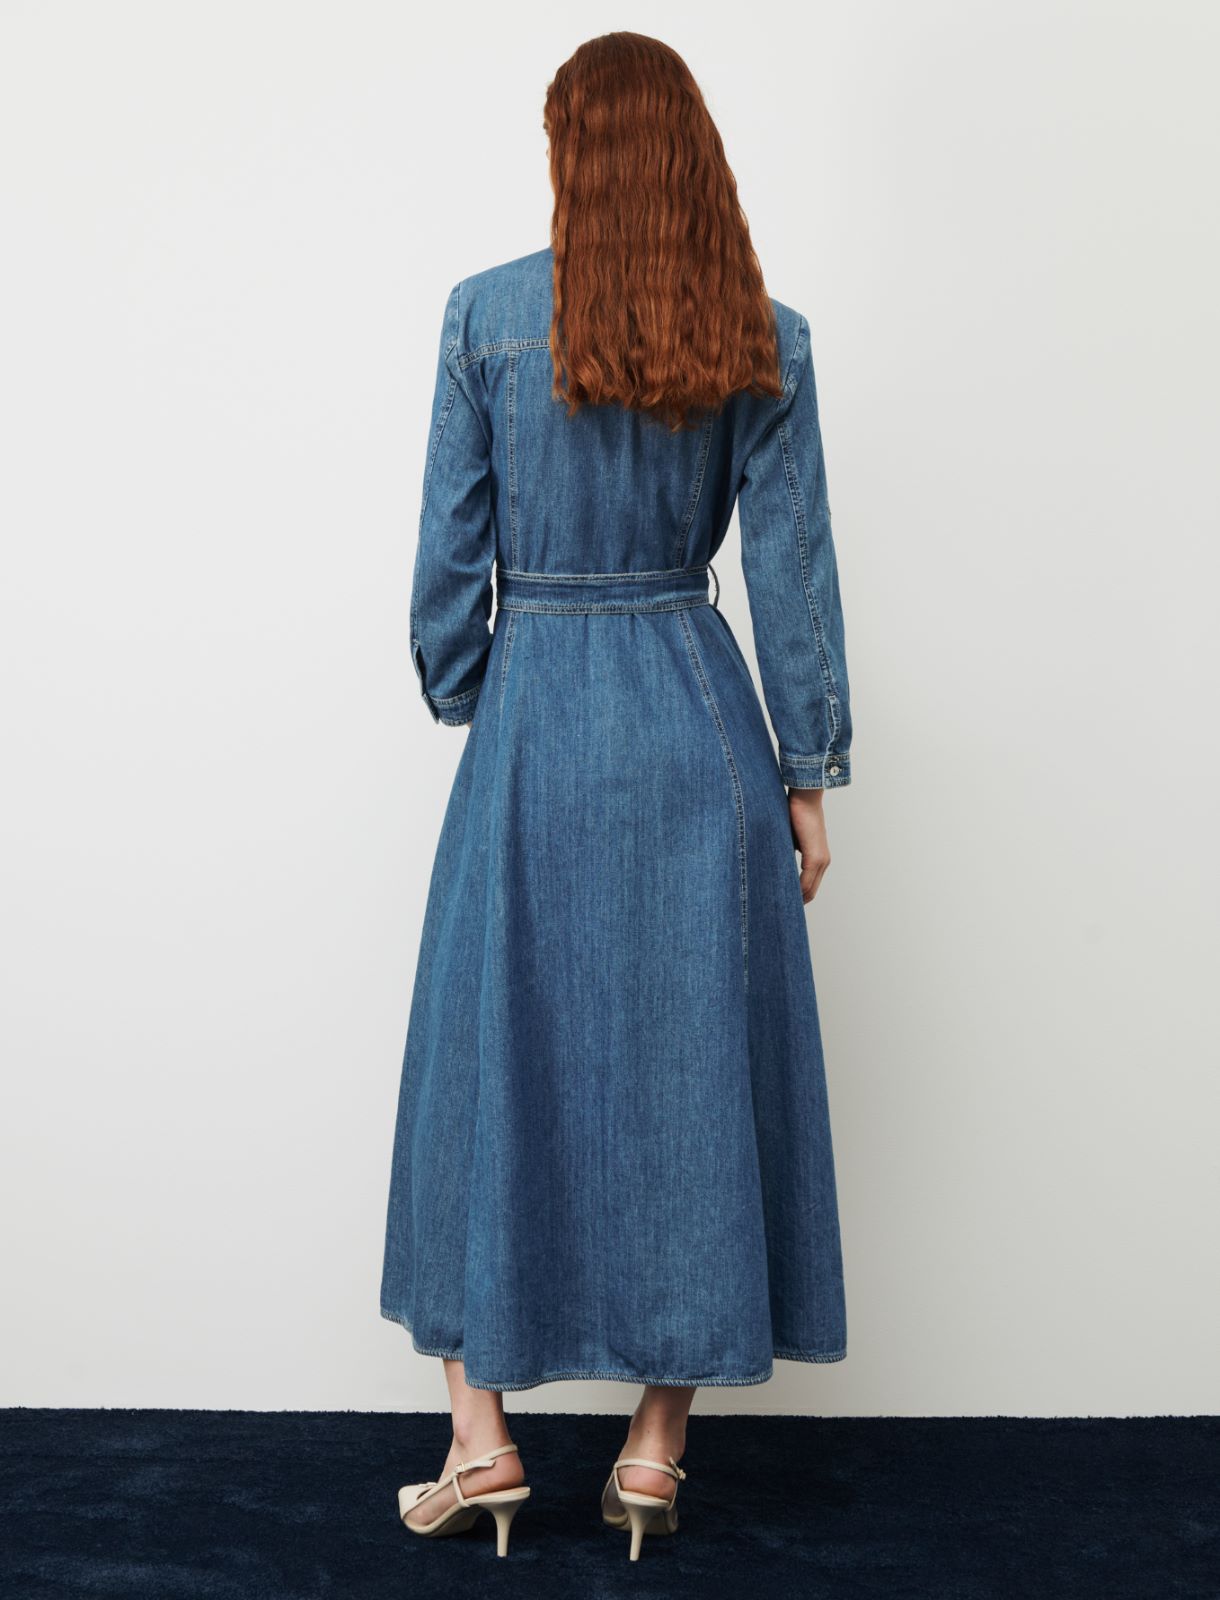 Denim dress - Blue jeans - Marina Rinaldi - 2